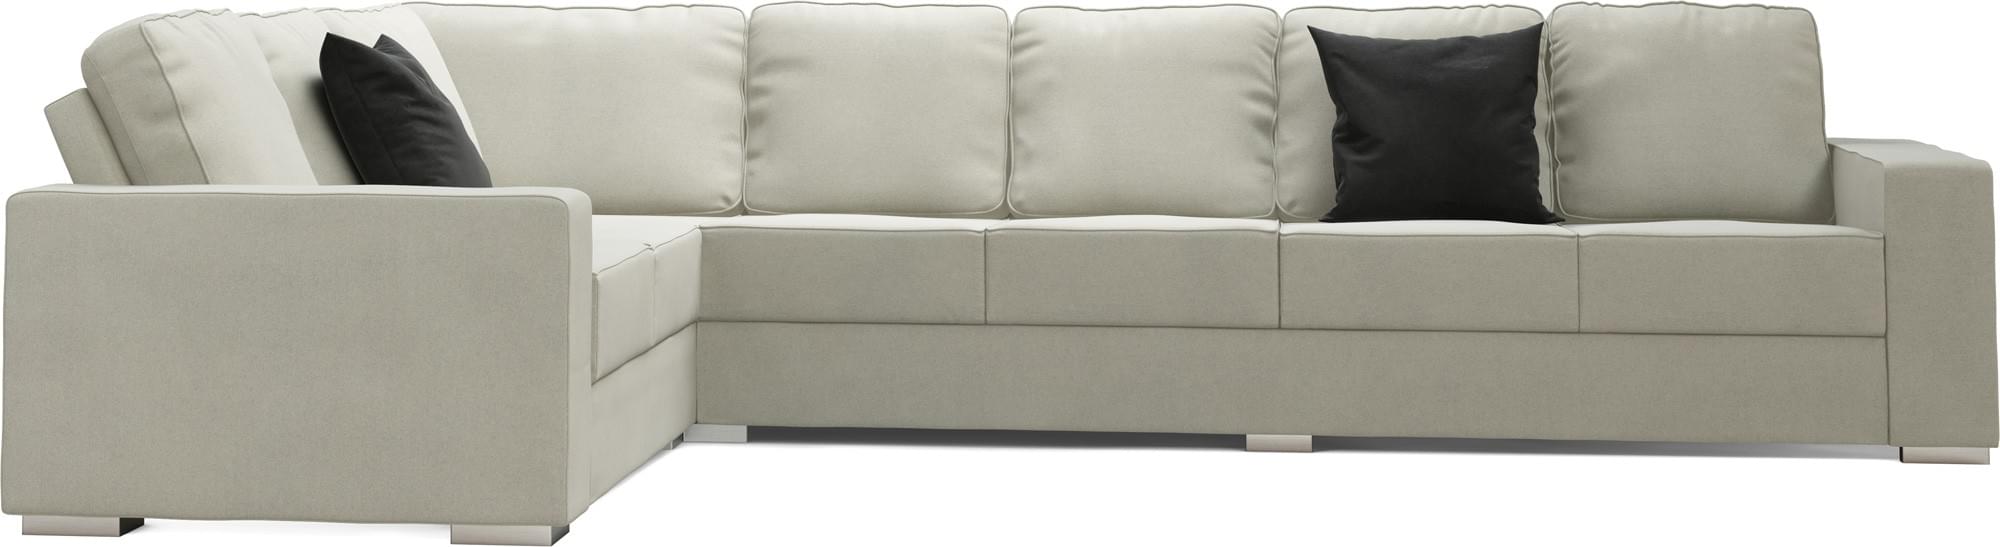 Ato 5X3 Corner Single Sofa Bed